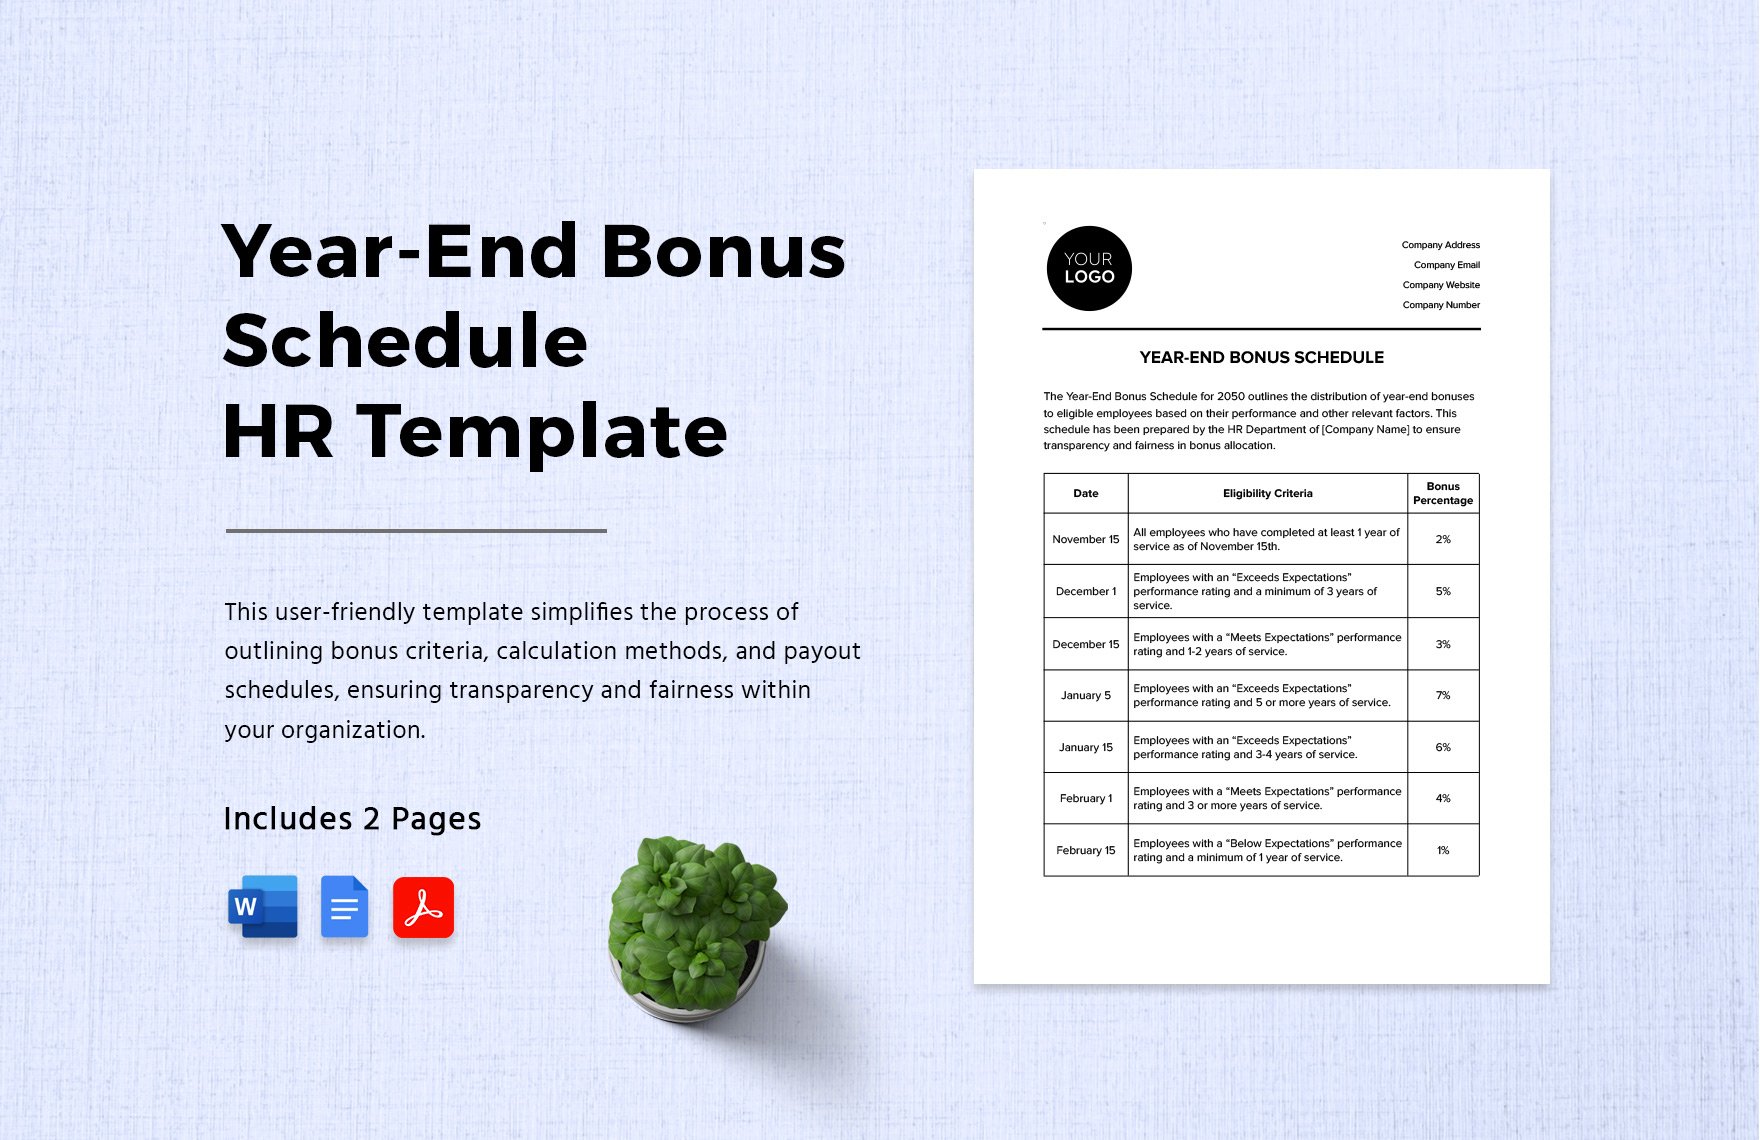 Year-End Bonus Schedule HR Template